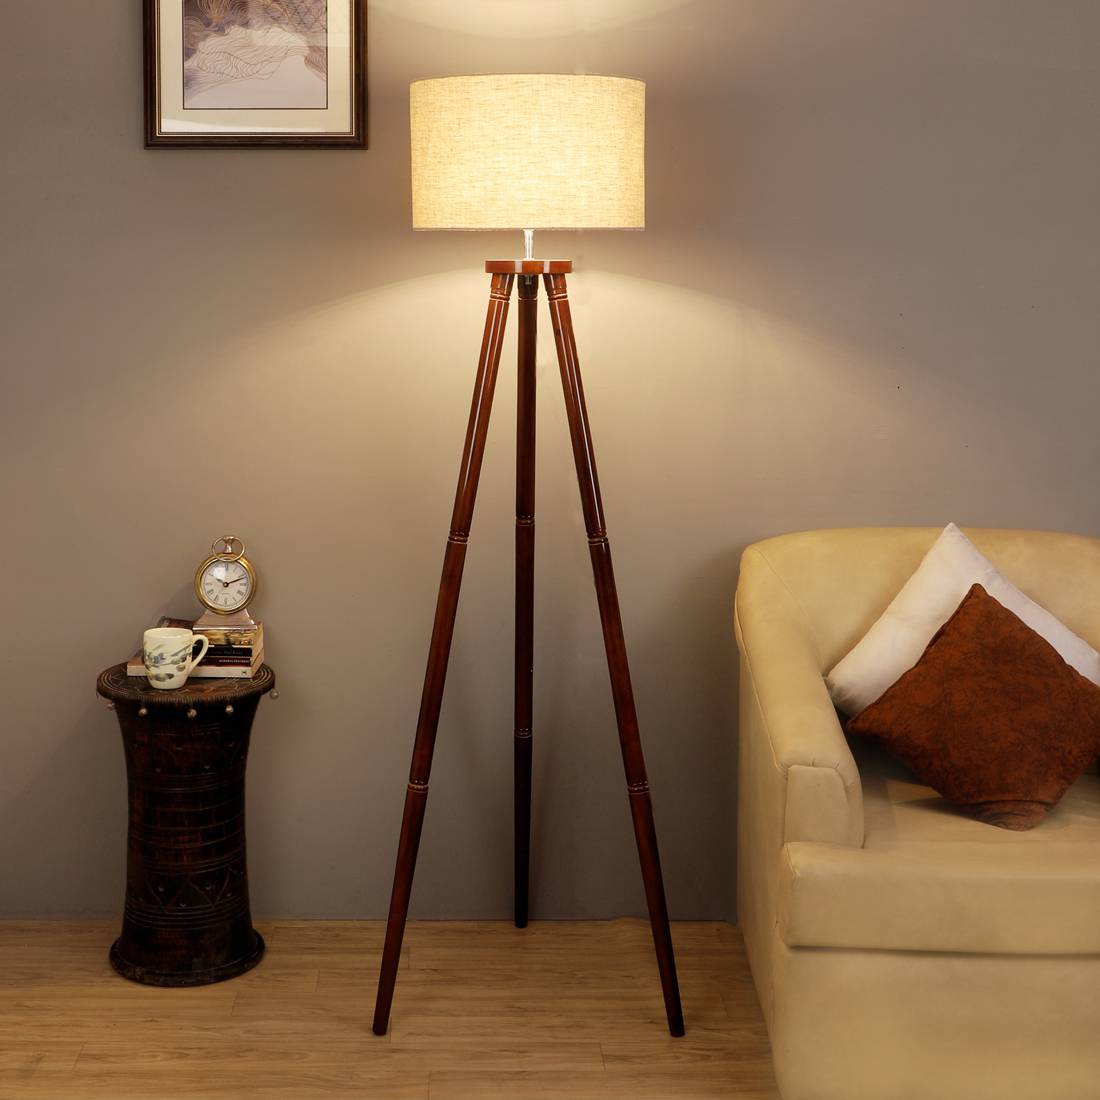 Floor Lamps Comtemporary, Fancy Floor Lamps For Living Room